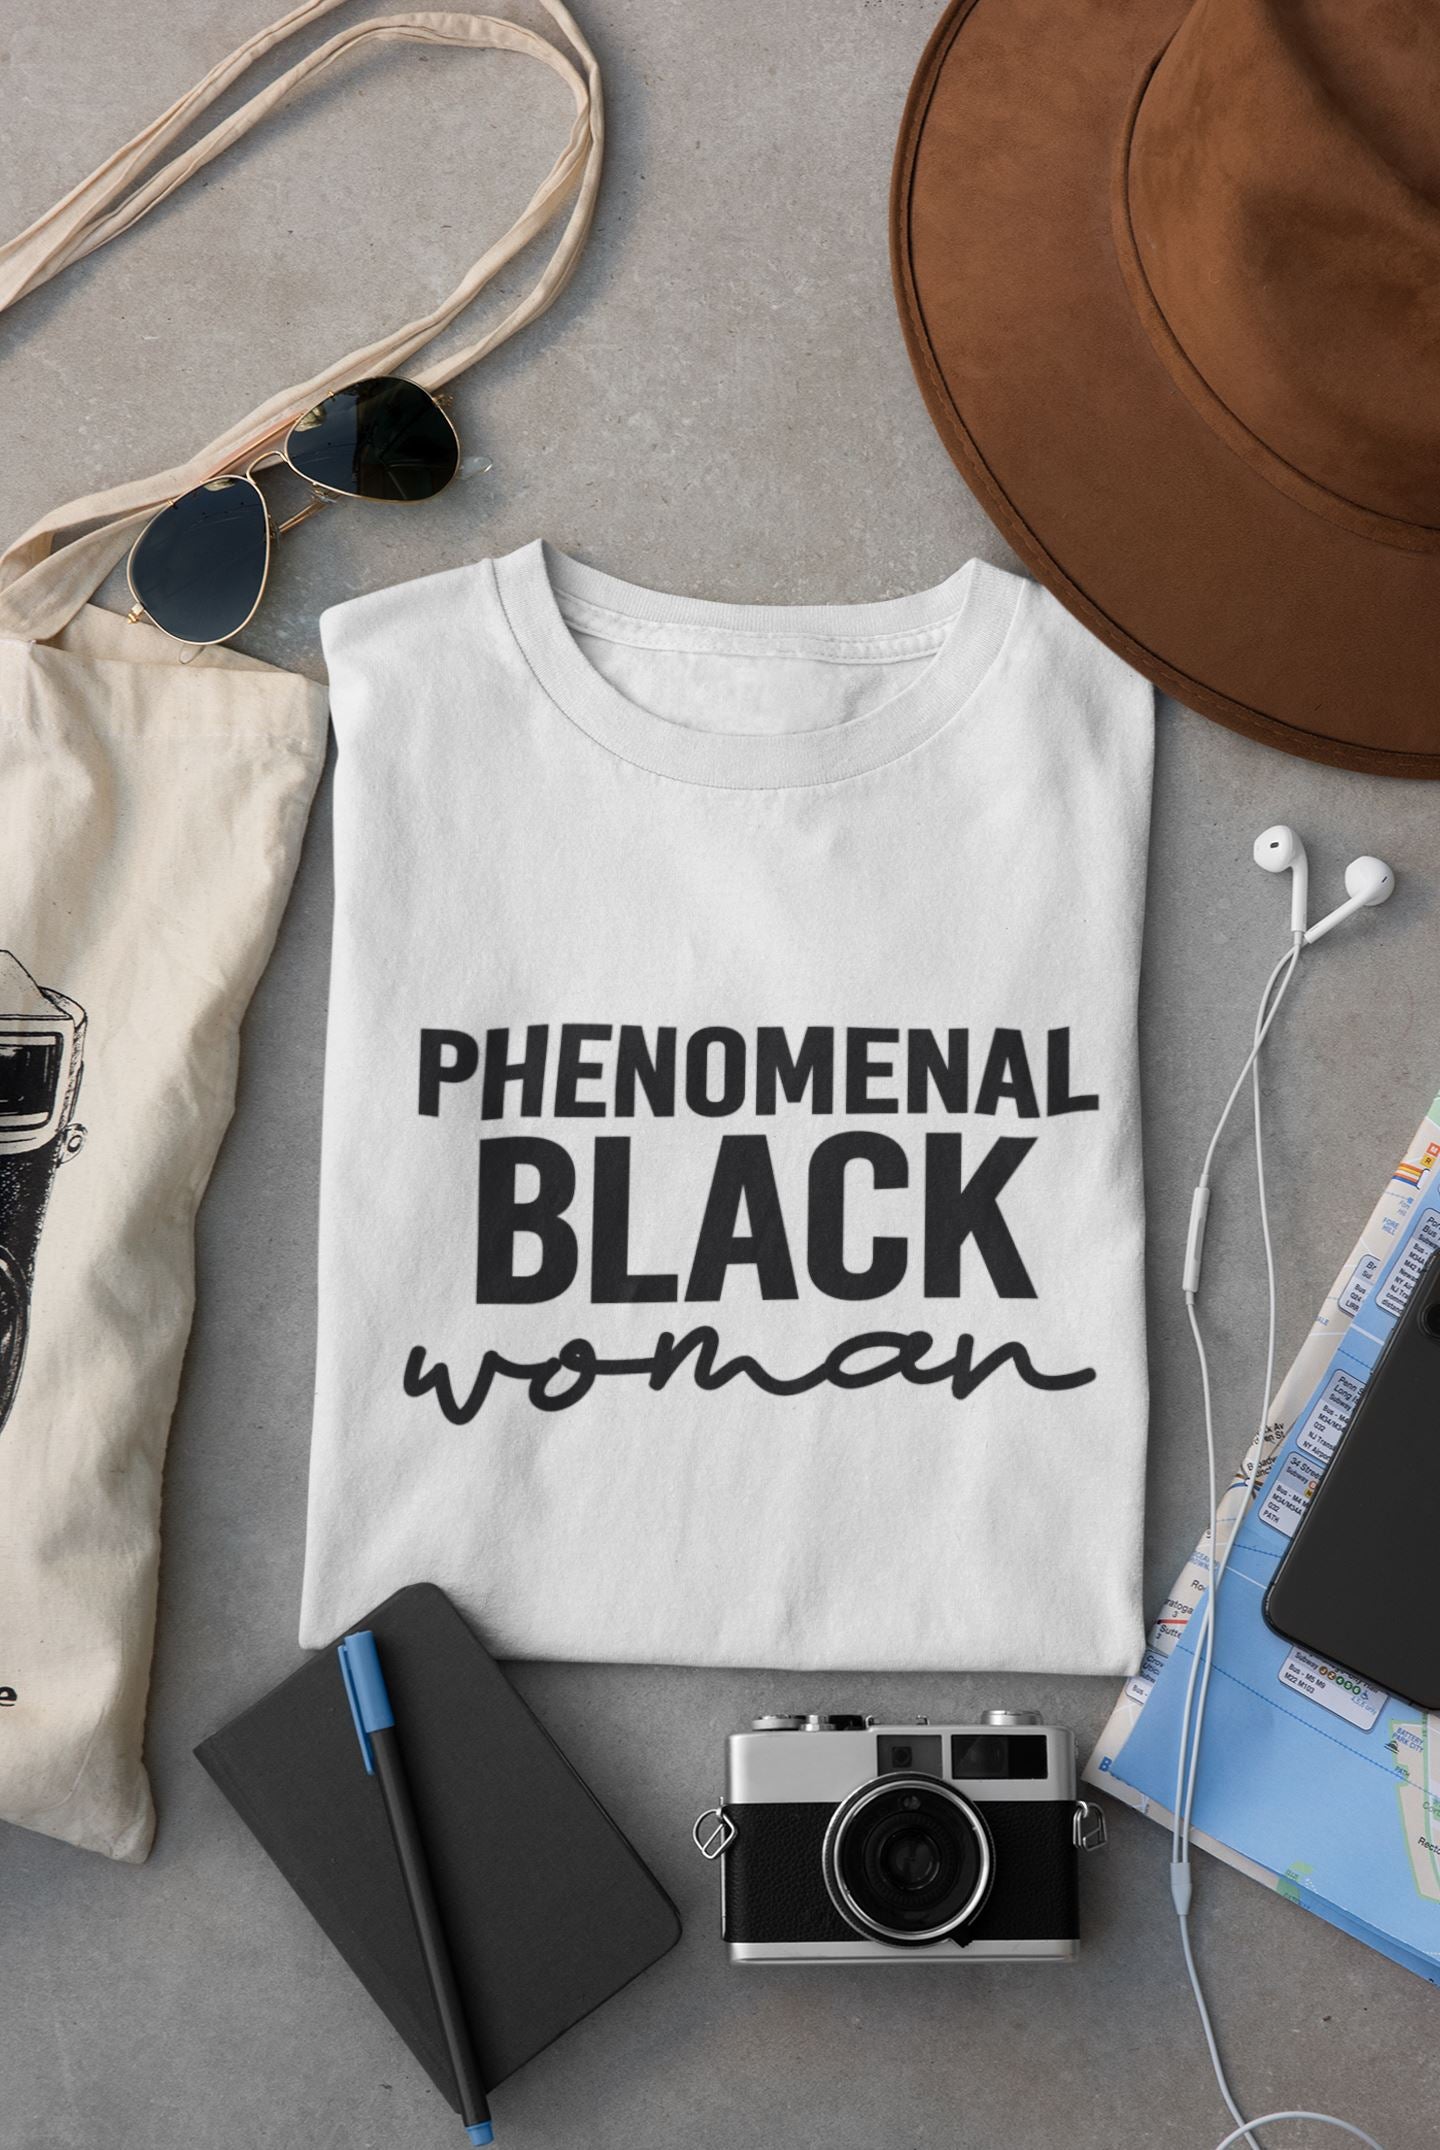 Black Queen T-Shirt Shirt B1ack By Design LLC S BLACK Phenomenal Black Woman